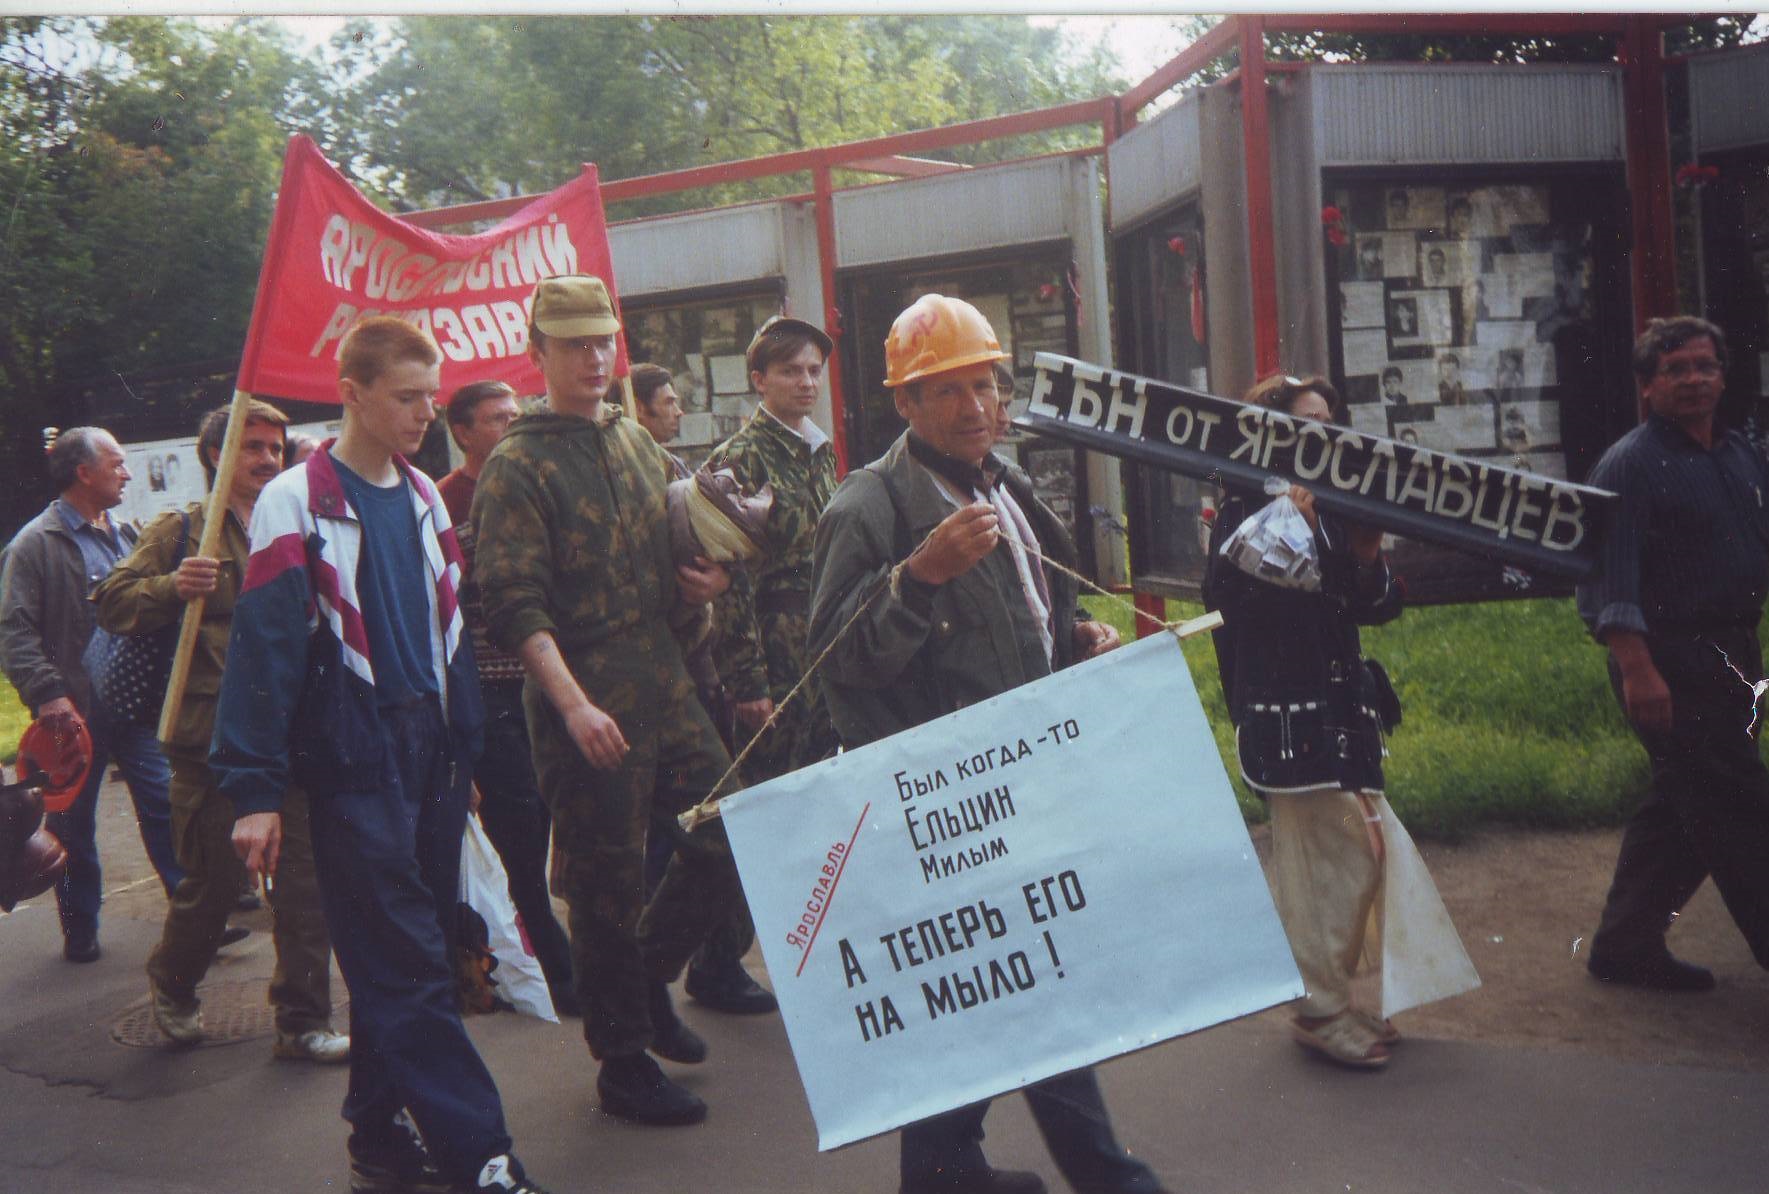 Г. А. Хохлов с плакатом "Был когда-то Ельцин милым, а теперь его на мыло!"